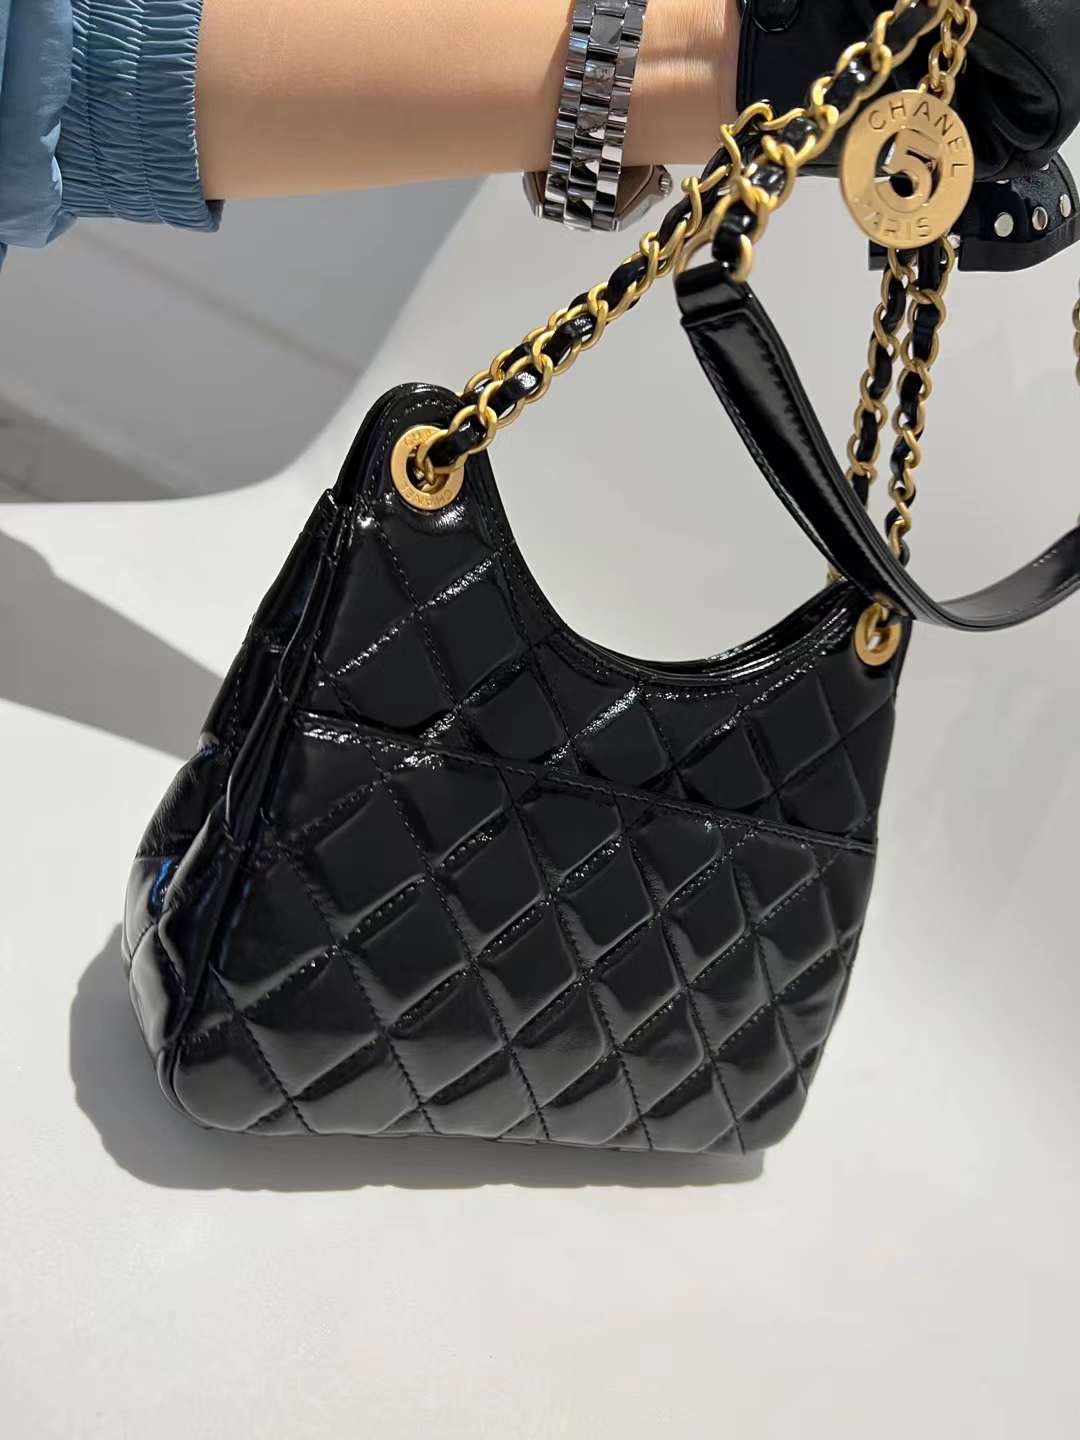 【P1580/1880】Chanel包包货源 香奈儿新款黑色菱格牛皮链条单肩斜挎女包